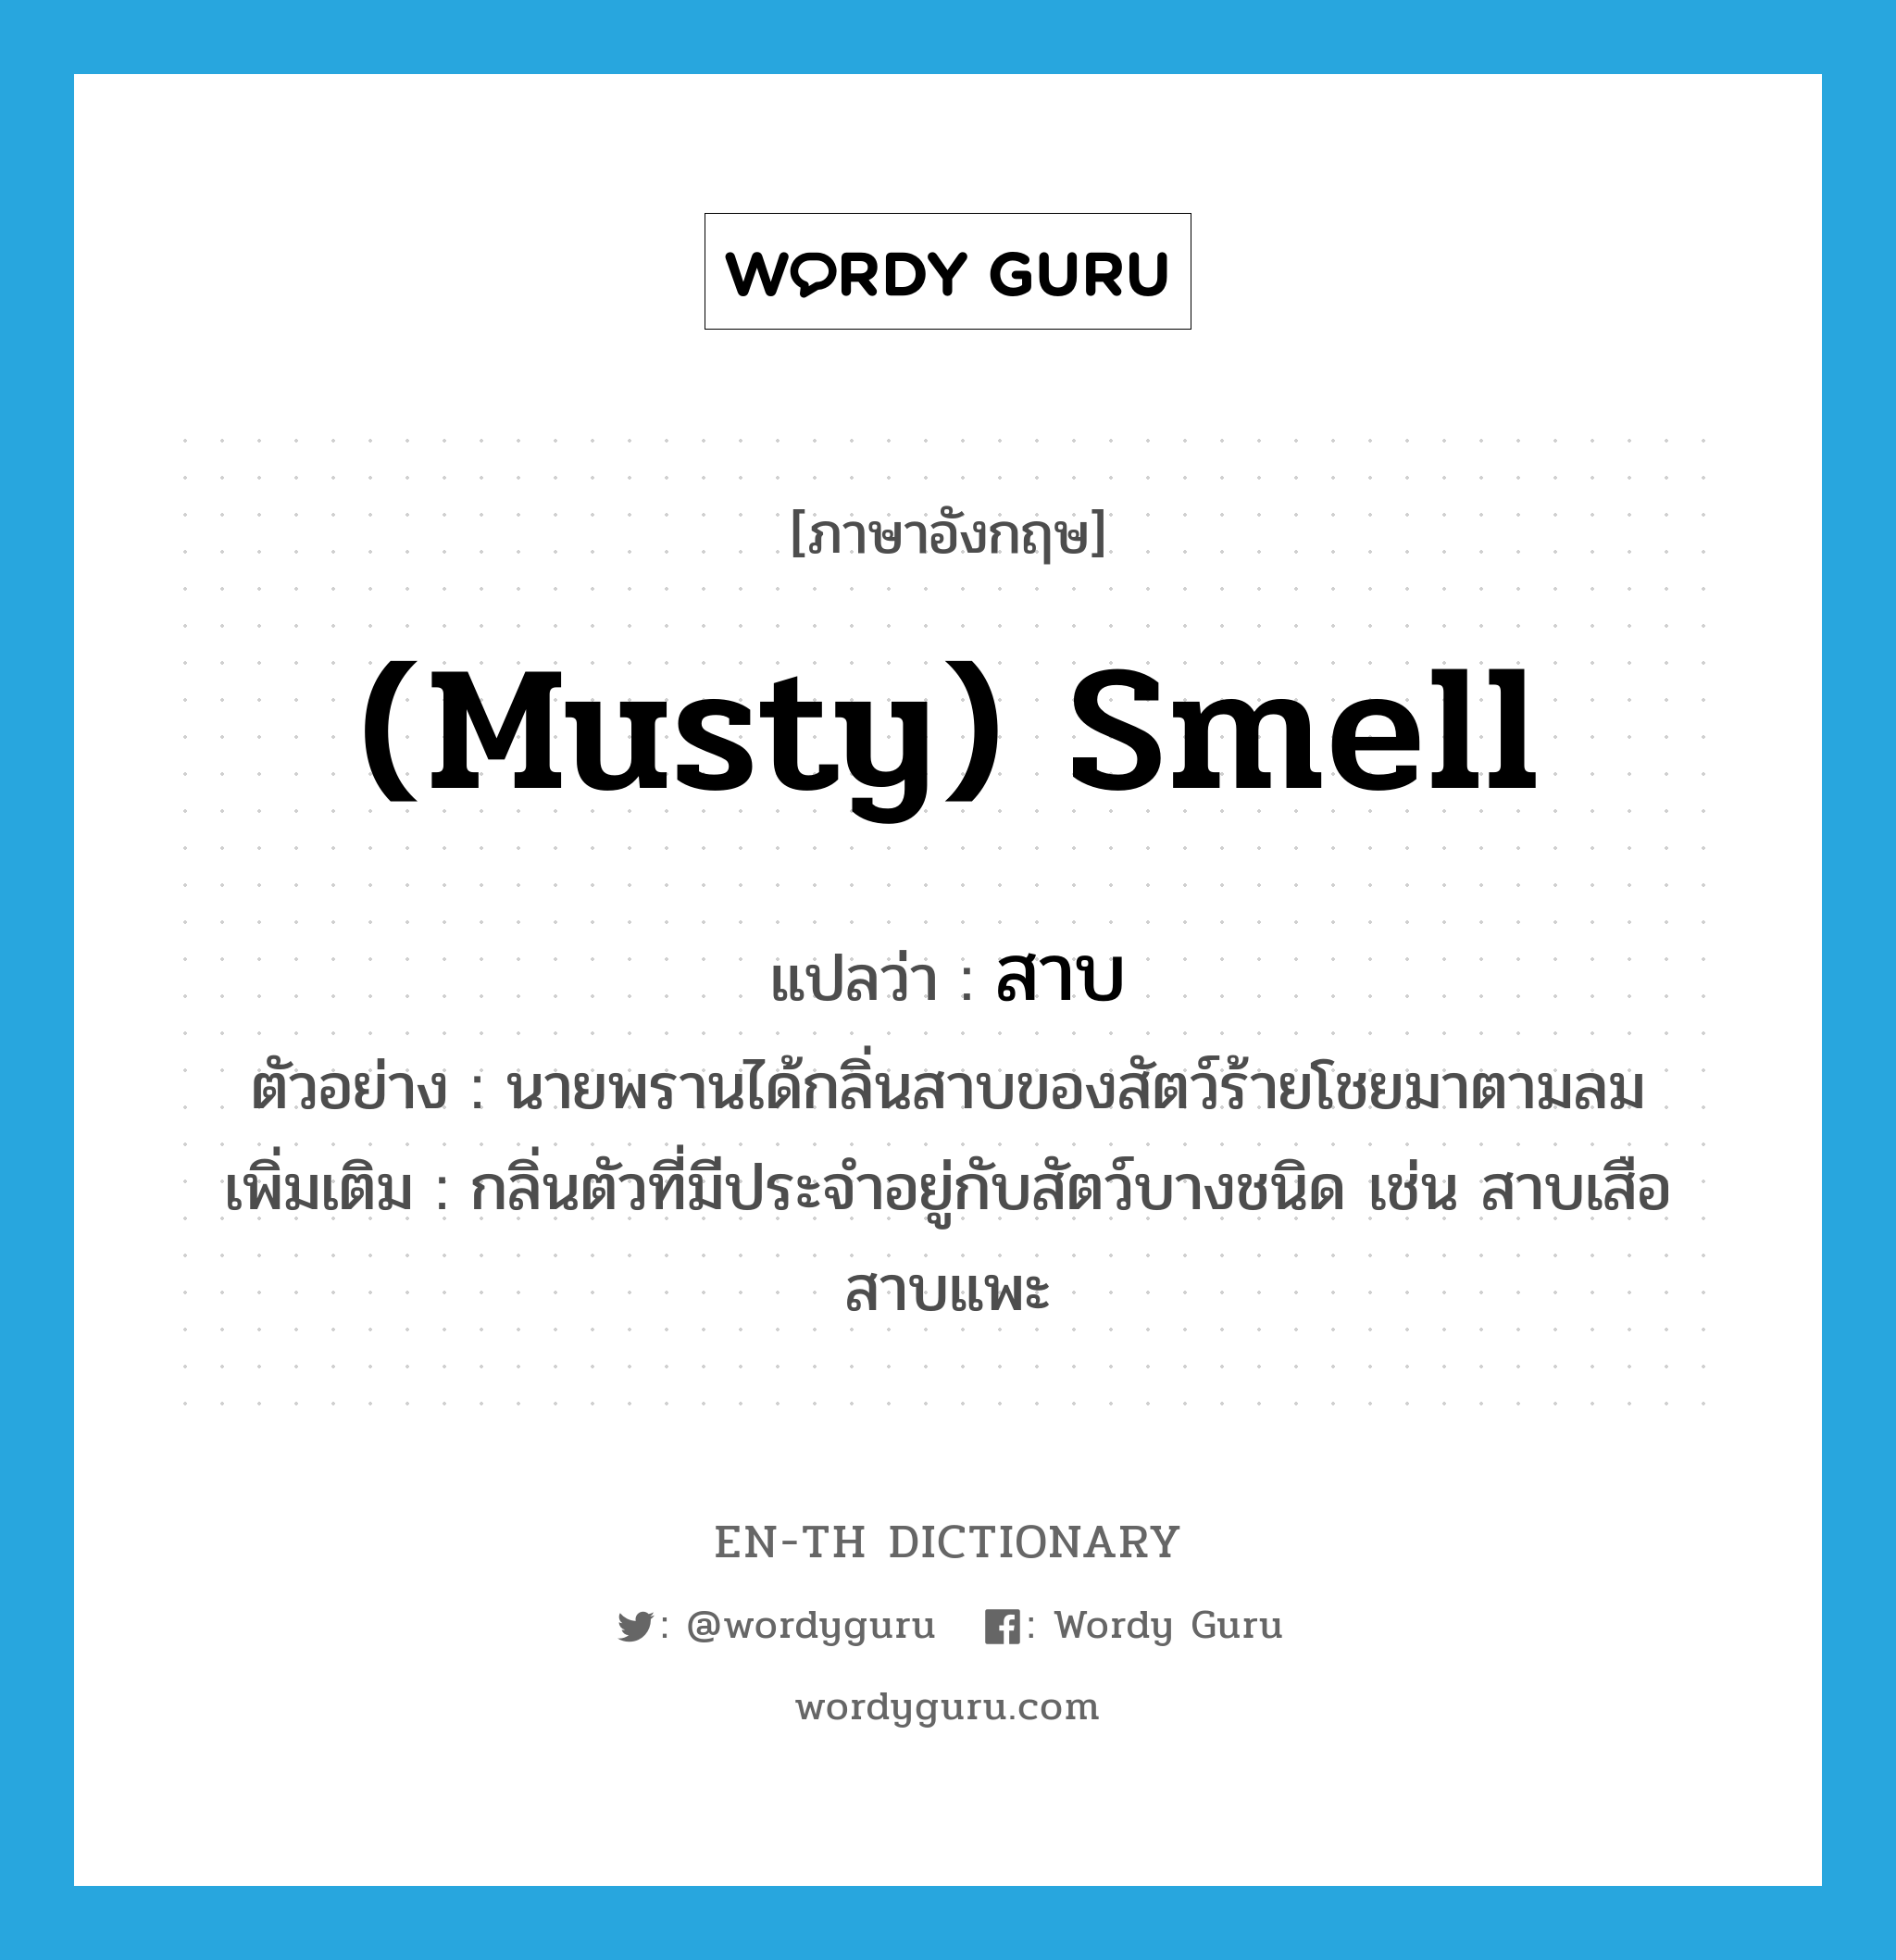 (musty) smell แปลว่า?, คำศัพท์ภาษาอังกฤษ (musty) smell แปลว่า สาบ ประเภท N ตัวอย่าง นายพรานได้กลิ่นสาบของสัตว์ร้ายโชยมาตามลม เพิ่มเติม กลิ่นตัวที่มีประจำอยู่กับสัตว์บางชนิด เช่น สาบเสือ สาบแพะ หมวด N